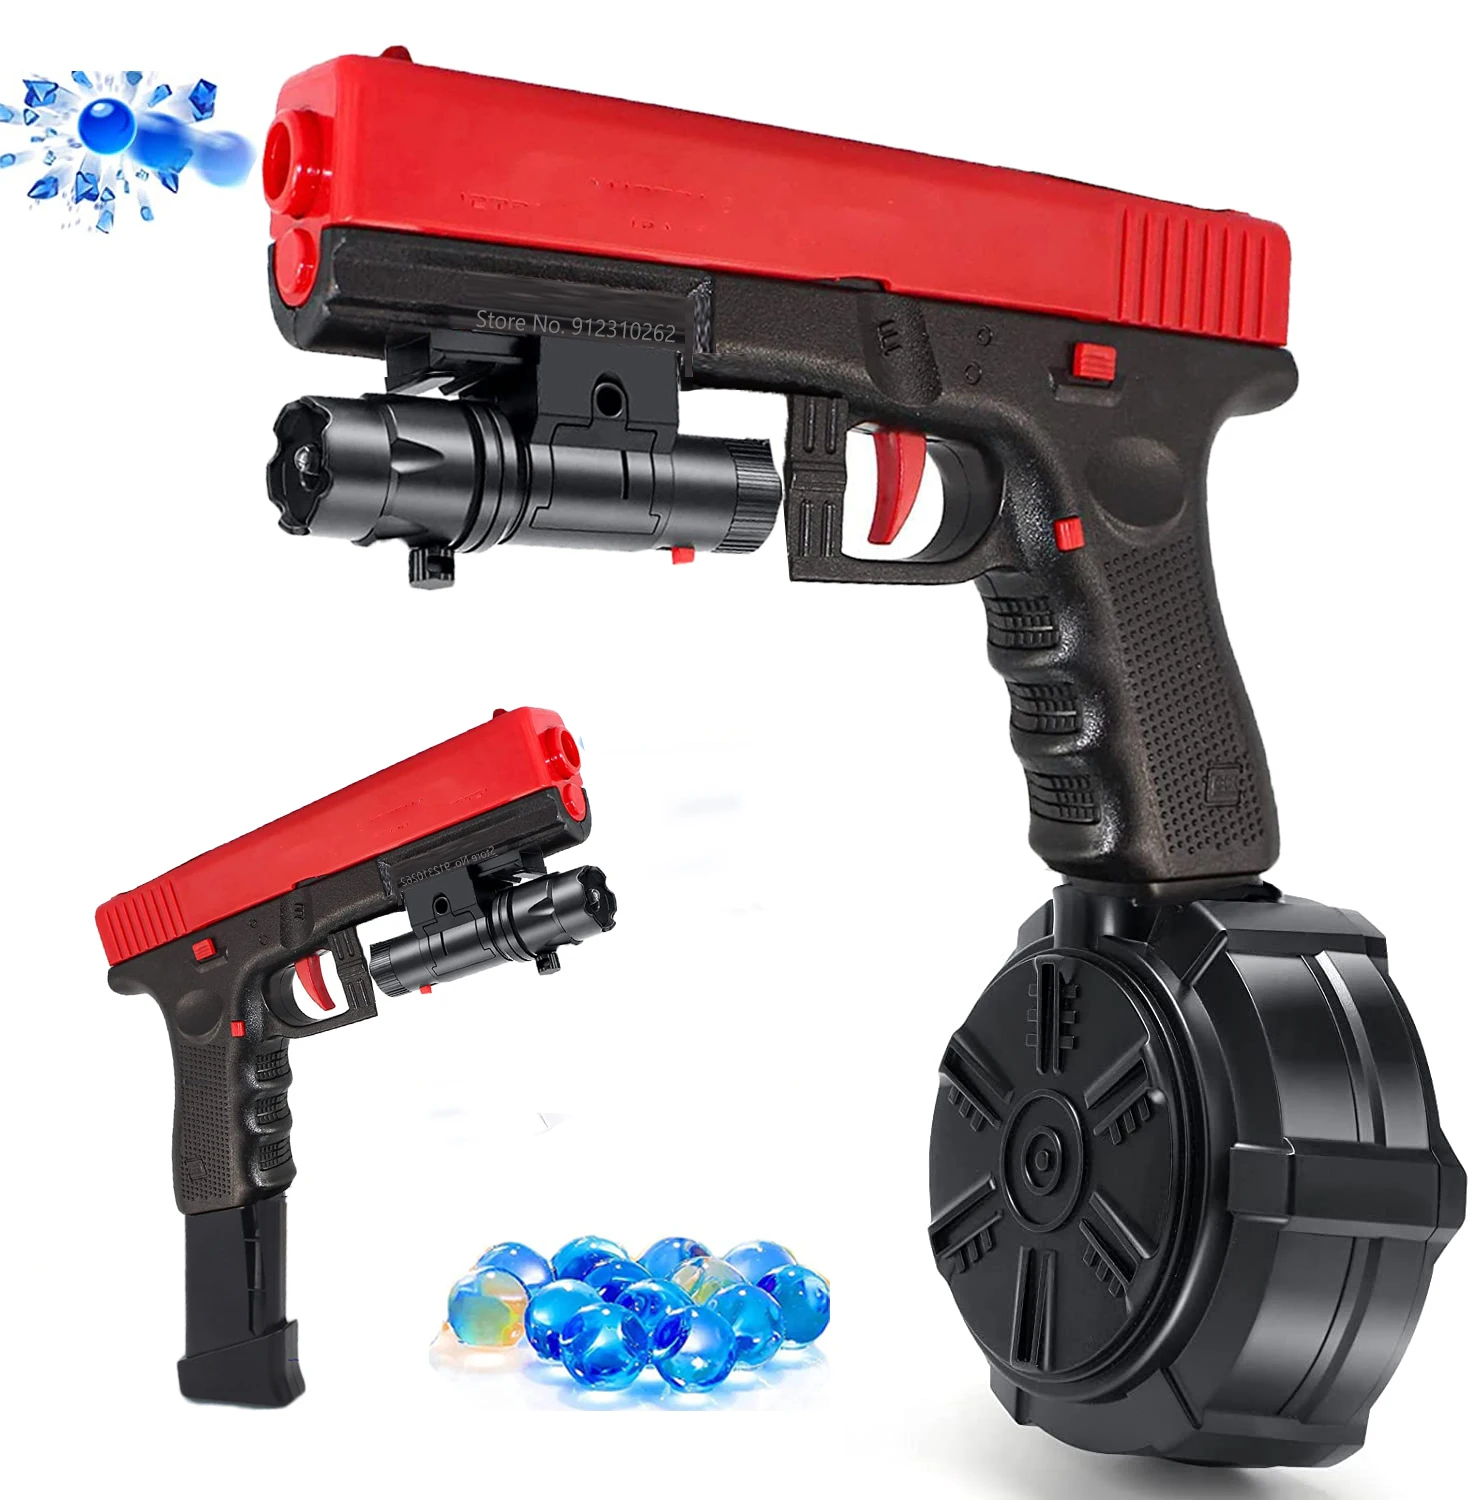 

JM X2 электрические часы Gel Blaster Orbeez водяной шар игрушечный пистолет стрельба пистолет Страйкбольное Оружие для взрослых